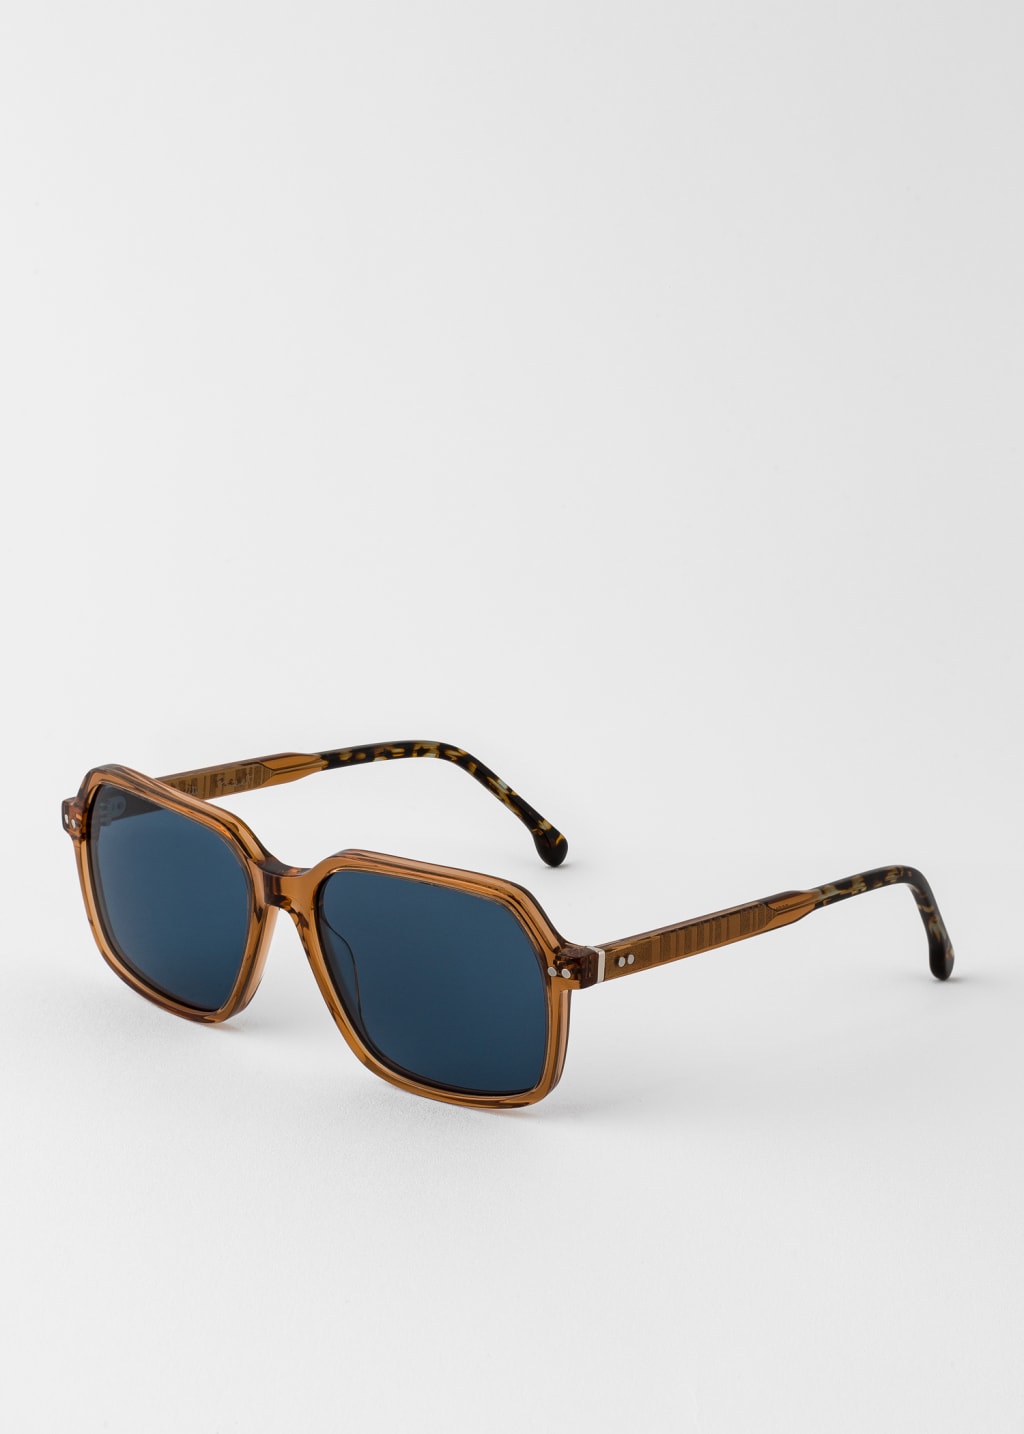 Product view - Havana Butterscotch 'Fleet' Sunglasses Paul Smith